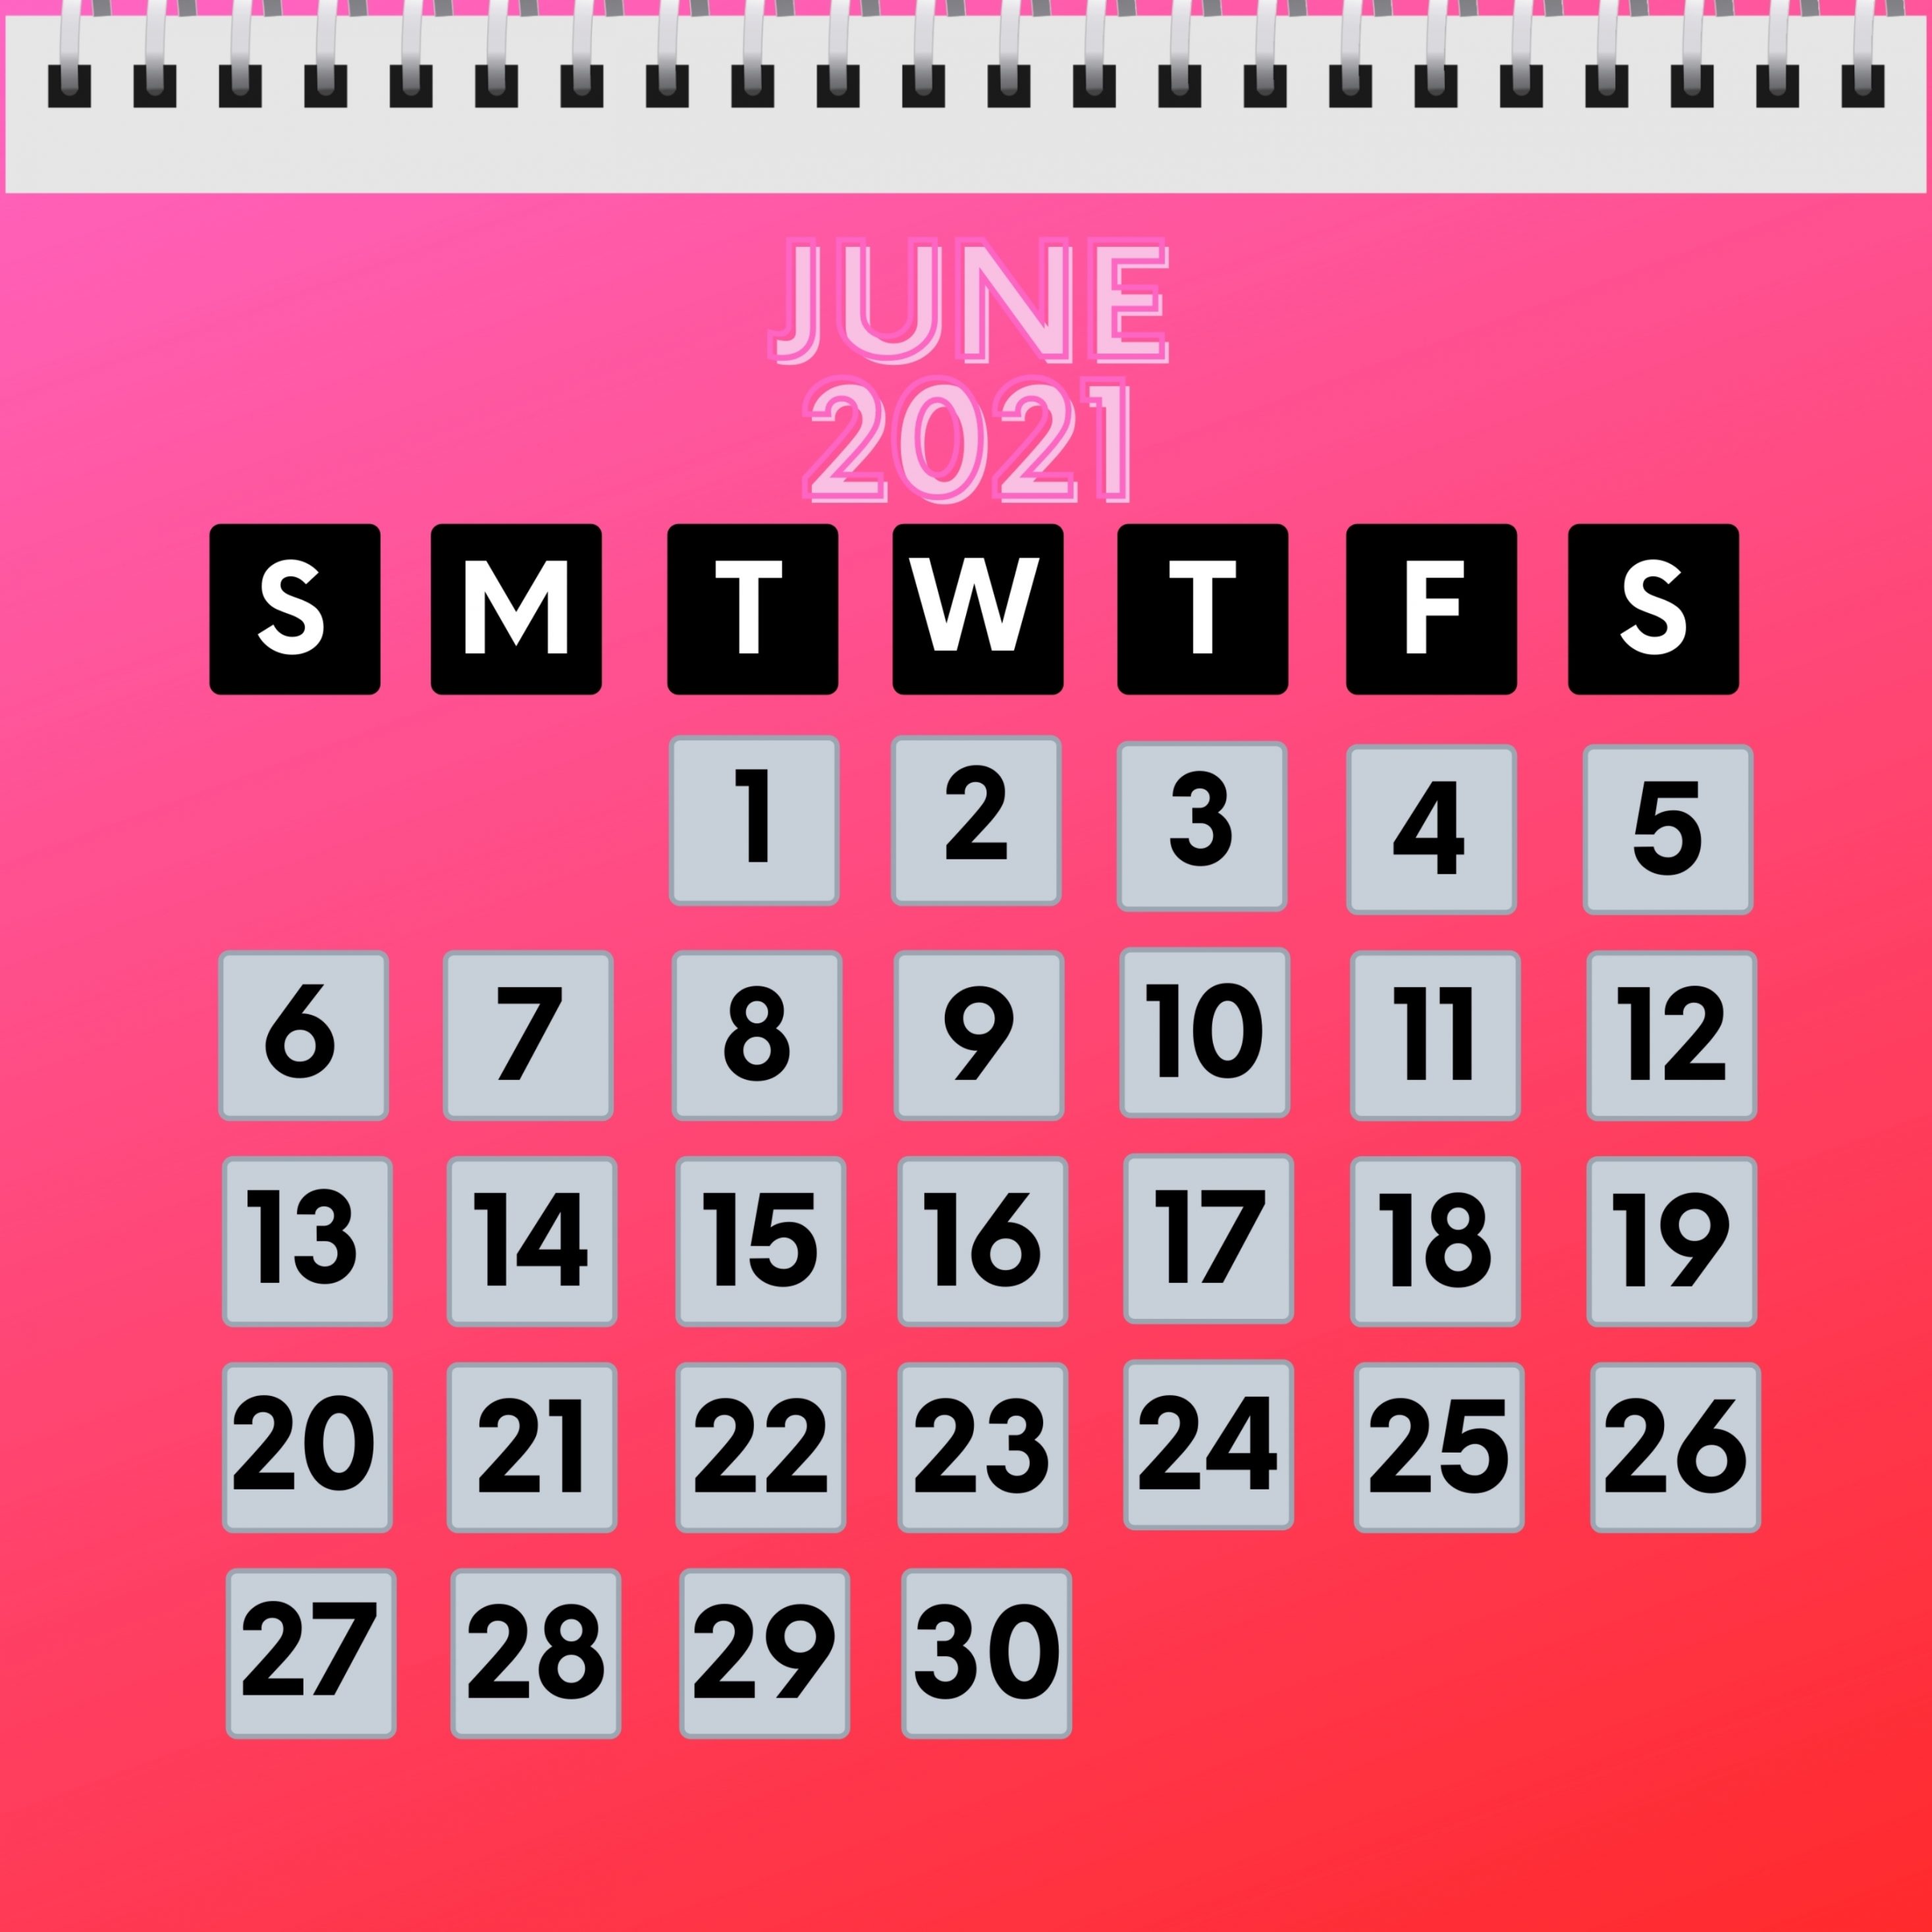 2934x2934 iOS iPad wallpaper 4k June 2021 Calendar iPad Wallpaper 2934x2934 pixels resolution